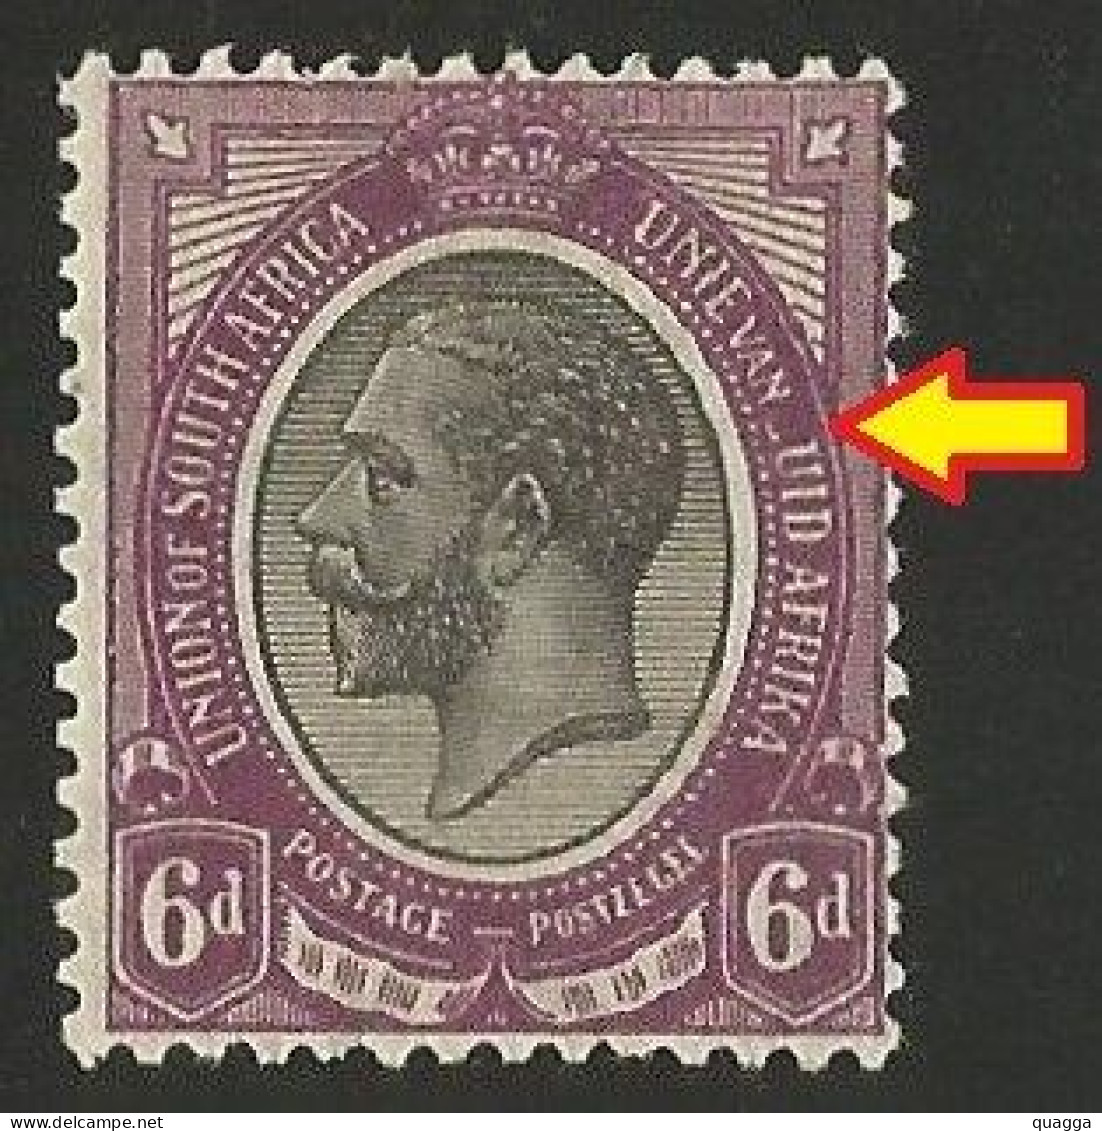 South Africa 1913. 6d Partial Missing 'Z' In 'ZUID'. (UHB 9 V1), SACC 10var*, SG 11var*. - Unused Stamps